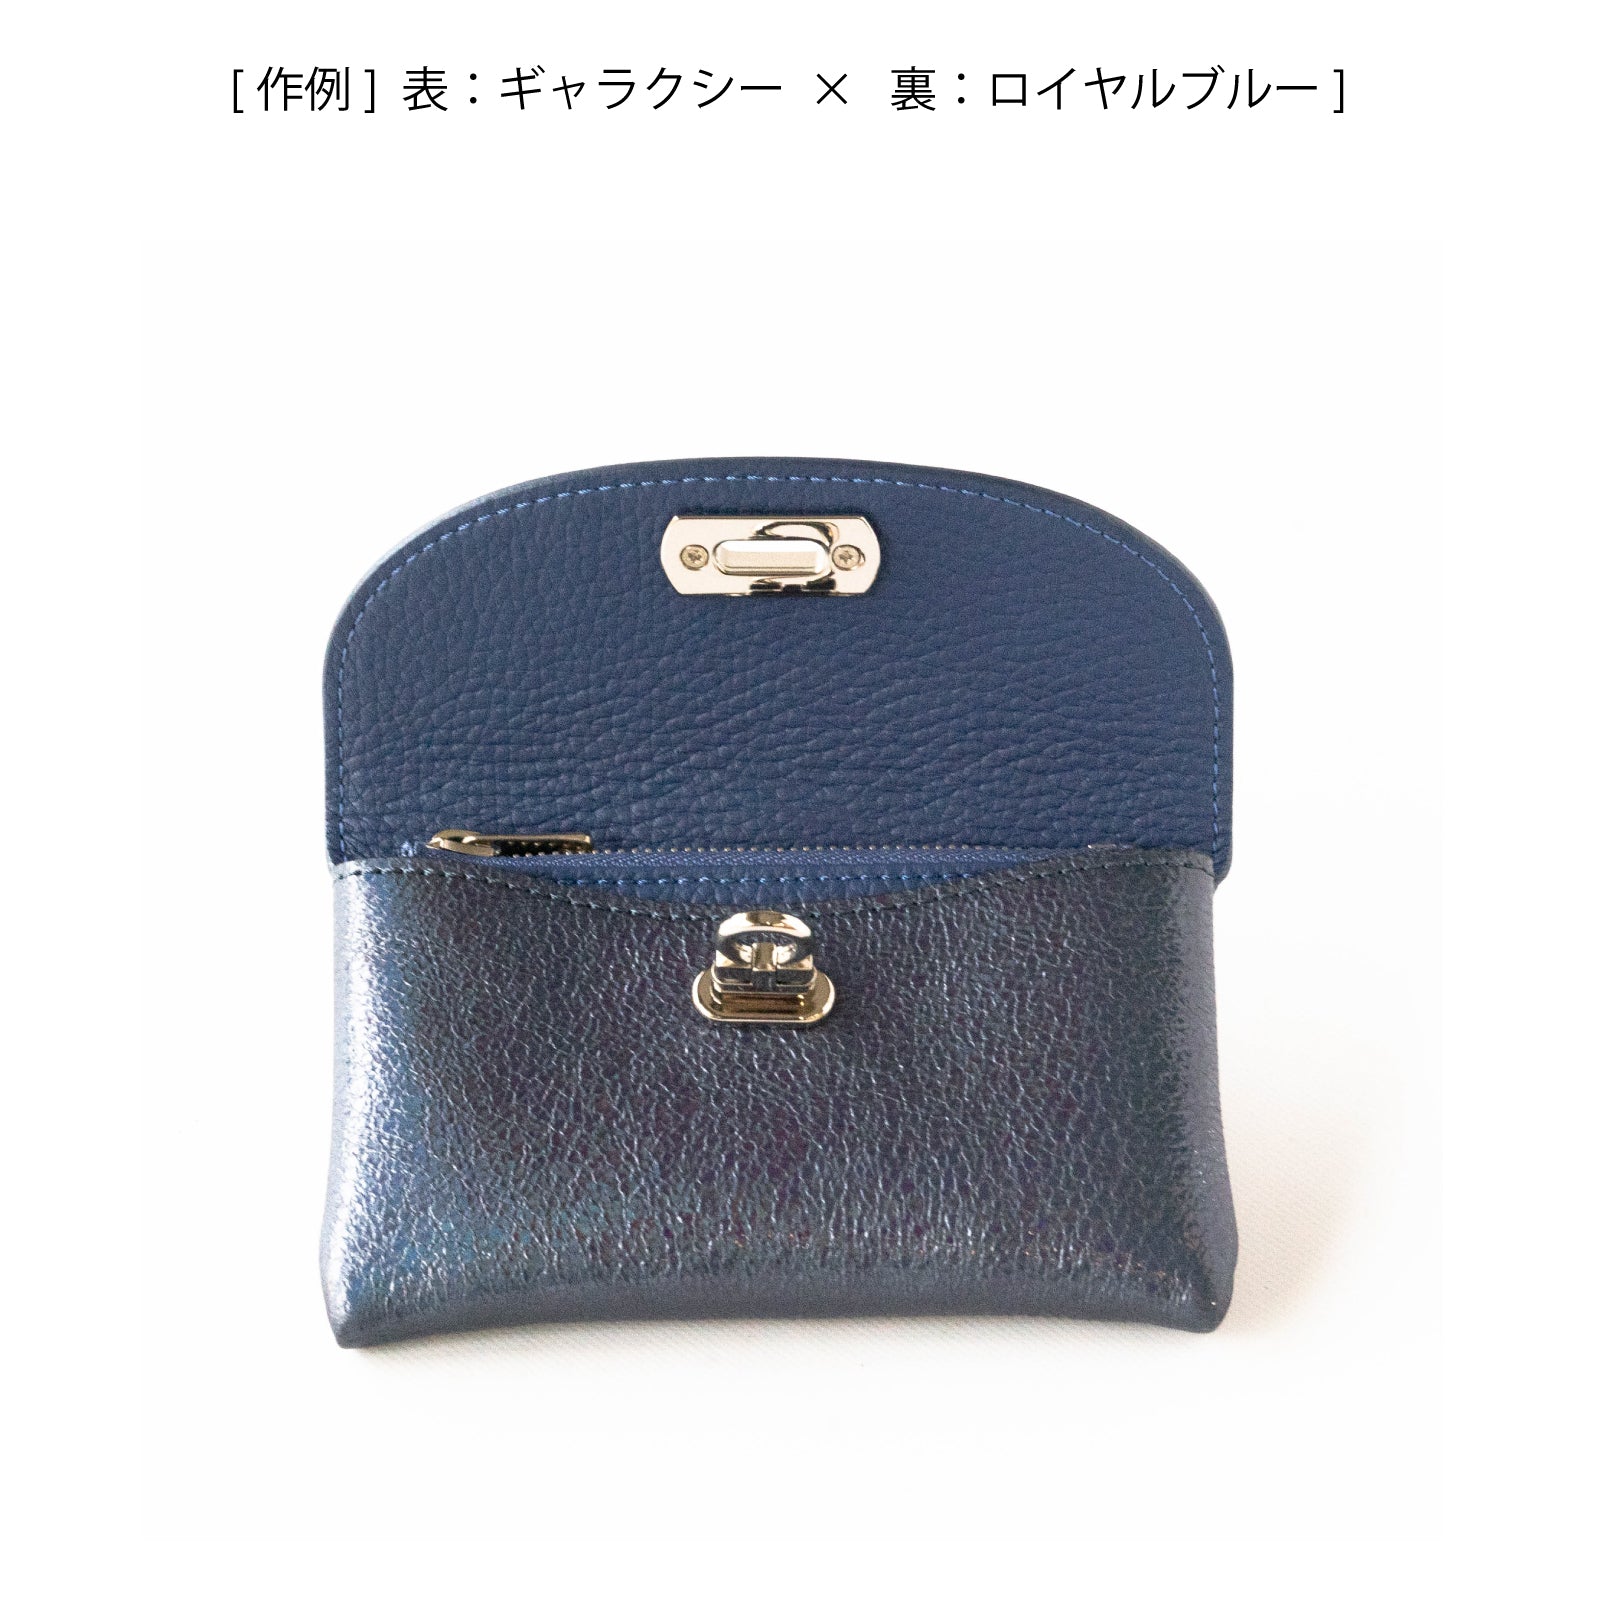 [Color order] Flap wallet fleur medium prism leather